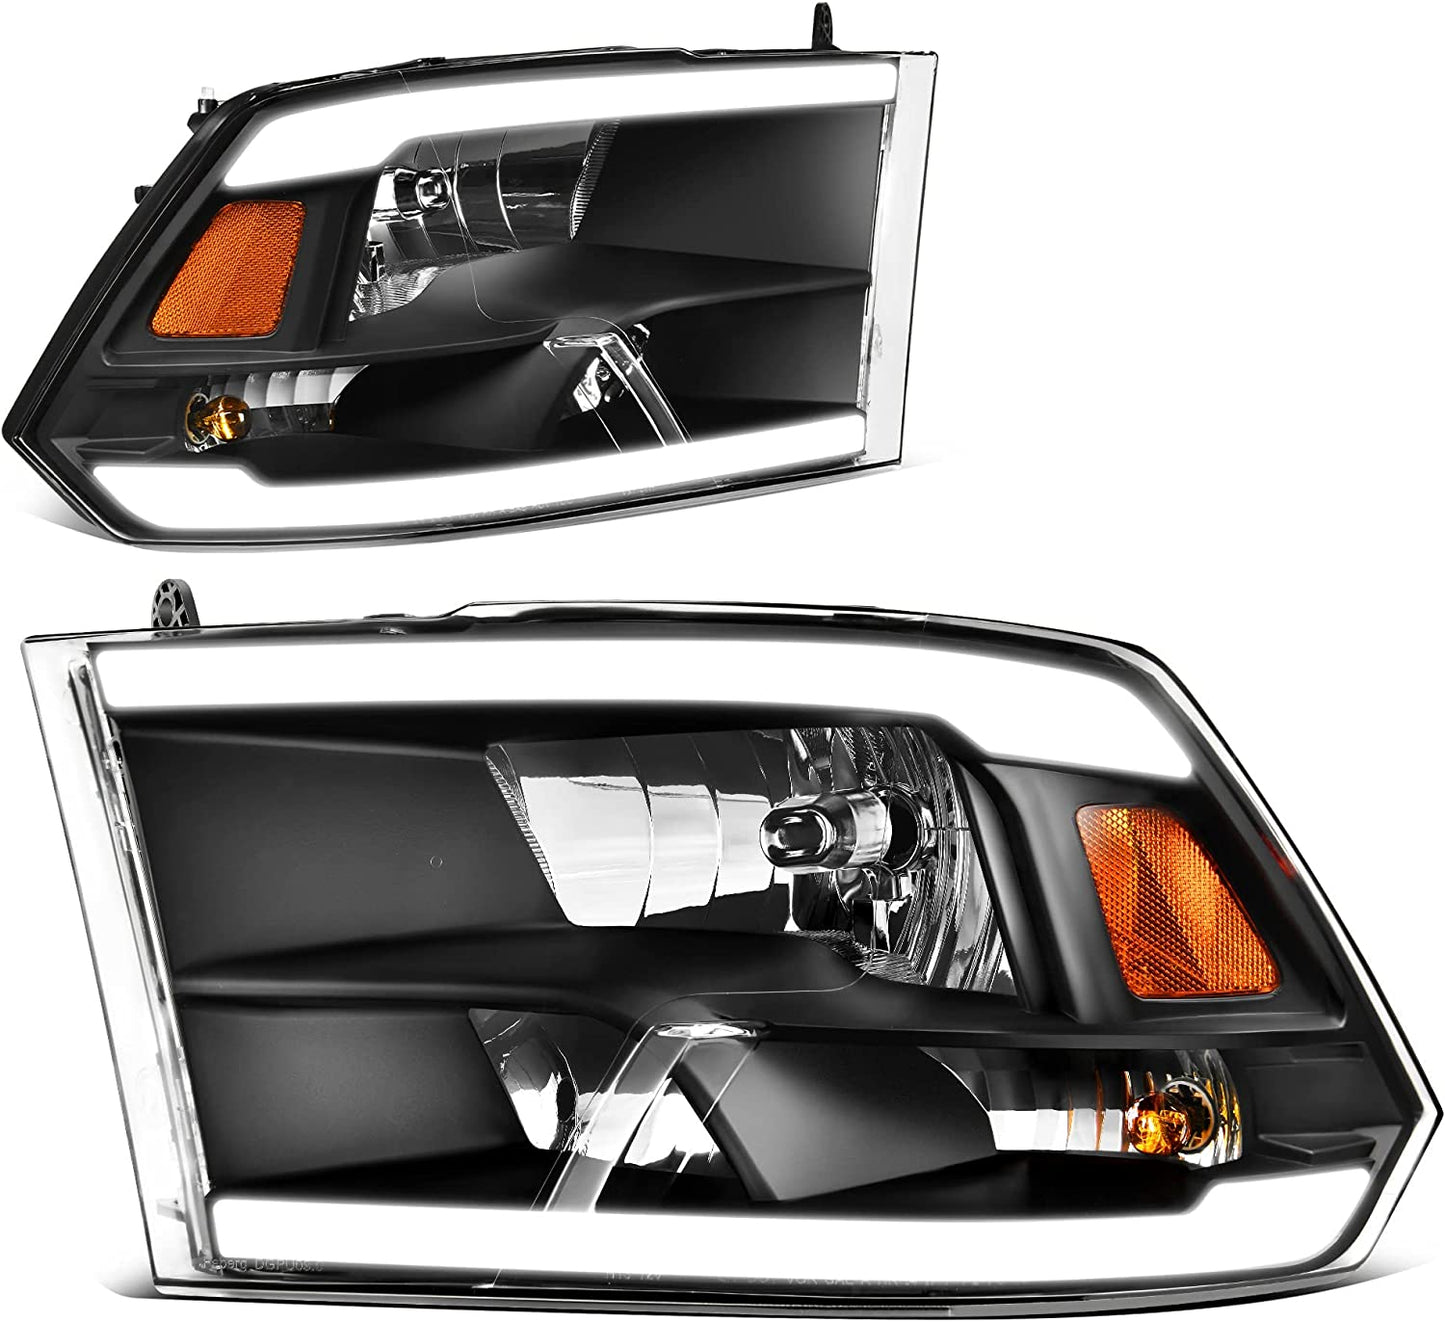 AUTOSAVER88: Montaje de faros delanteros compatible con Dodge Ram 4 puertas 1500 2500 3500, modelo 2009 a 2018. Faro de repuesto para Pickup. Color Negro. Lentes con carcasa transparente.